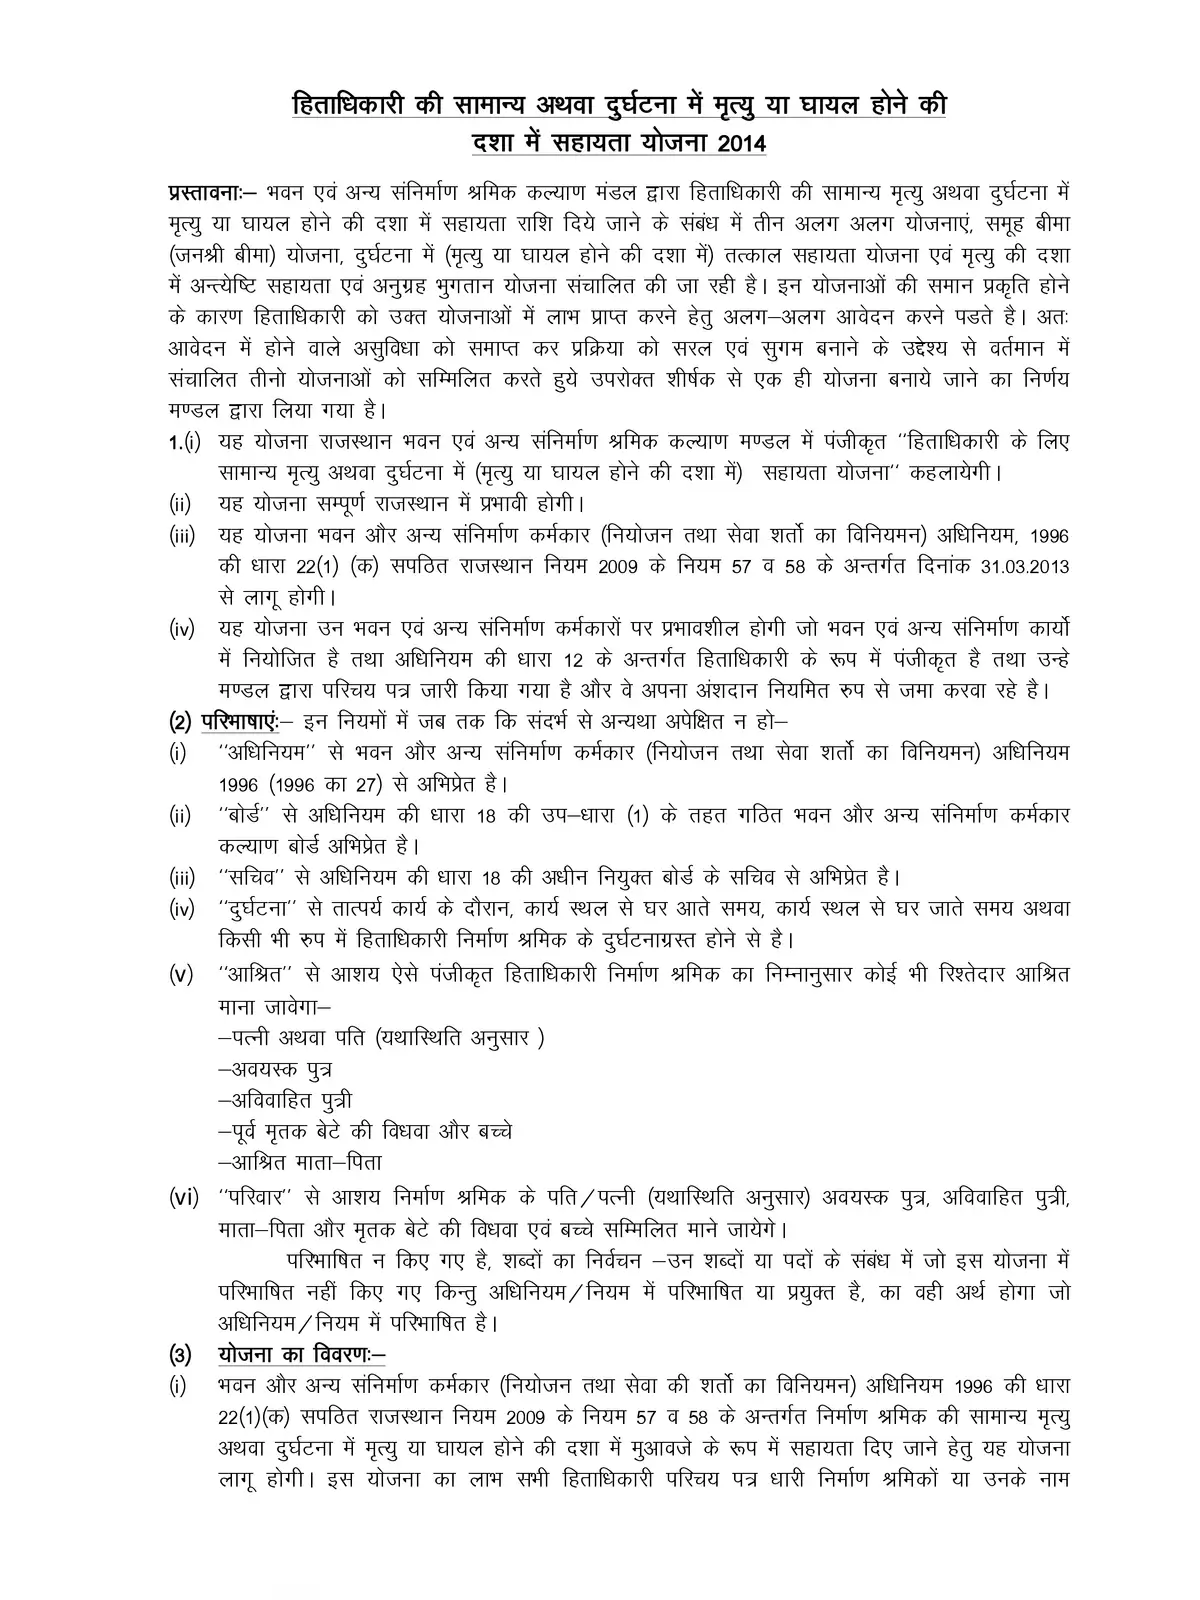 Rajasthan BOCW Accident Scheme Details